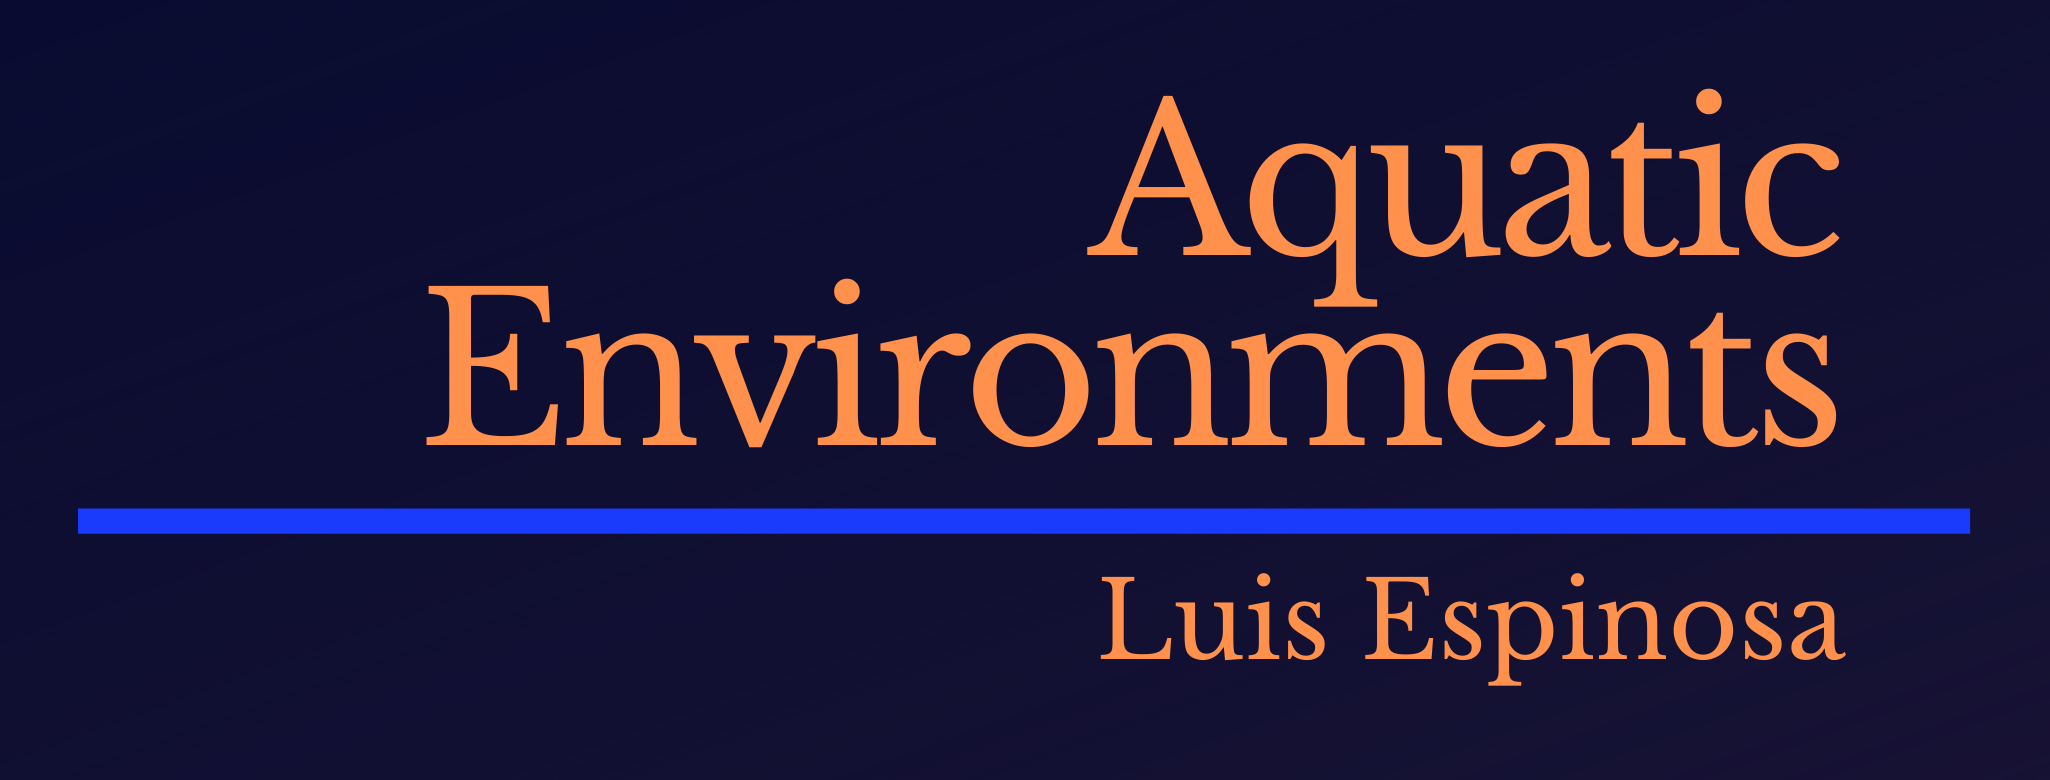 Aquatic Environments